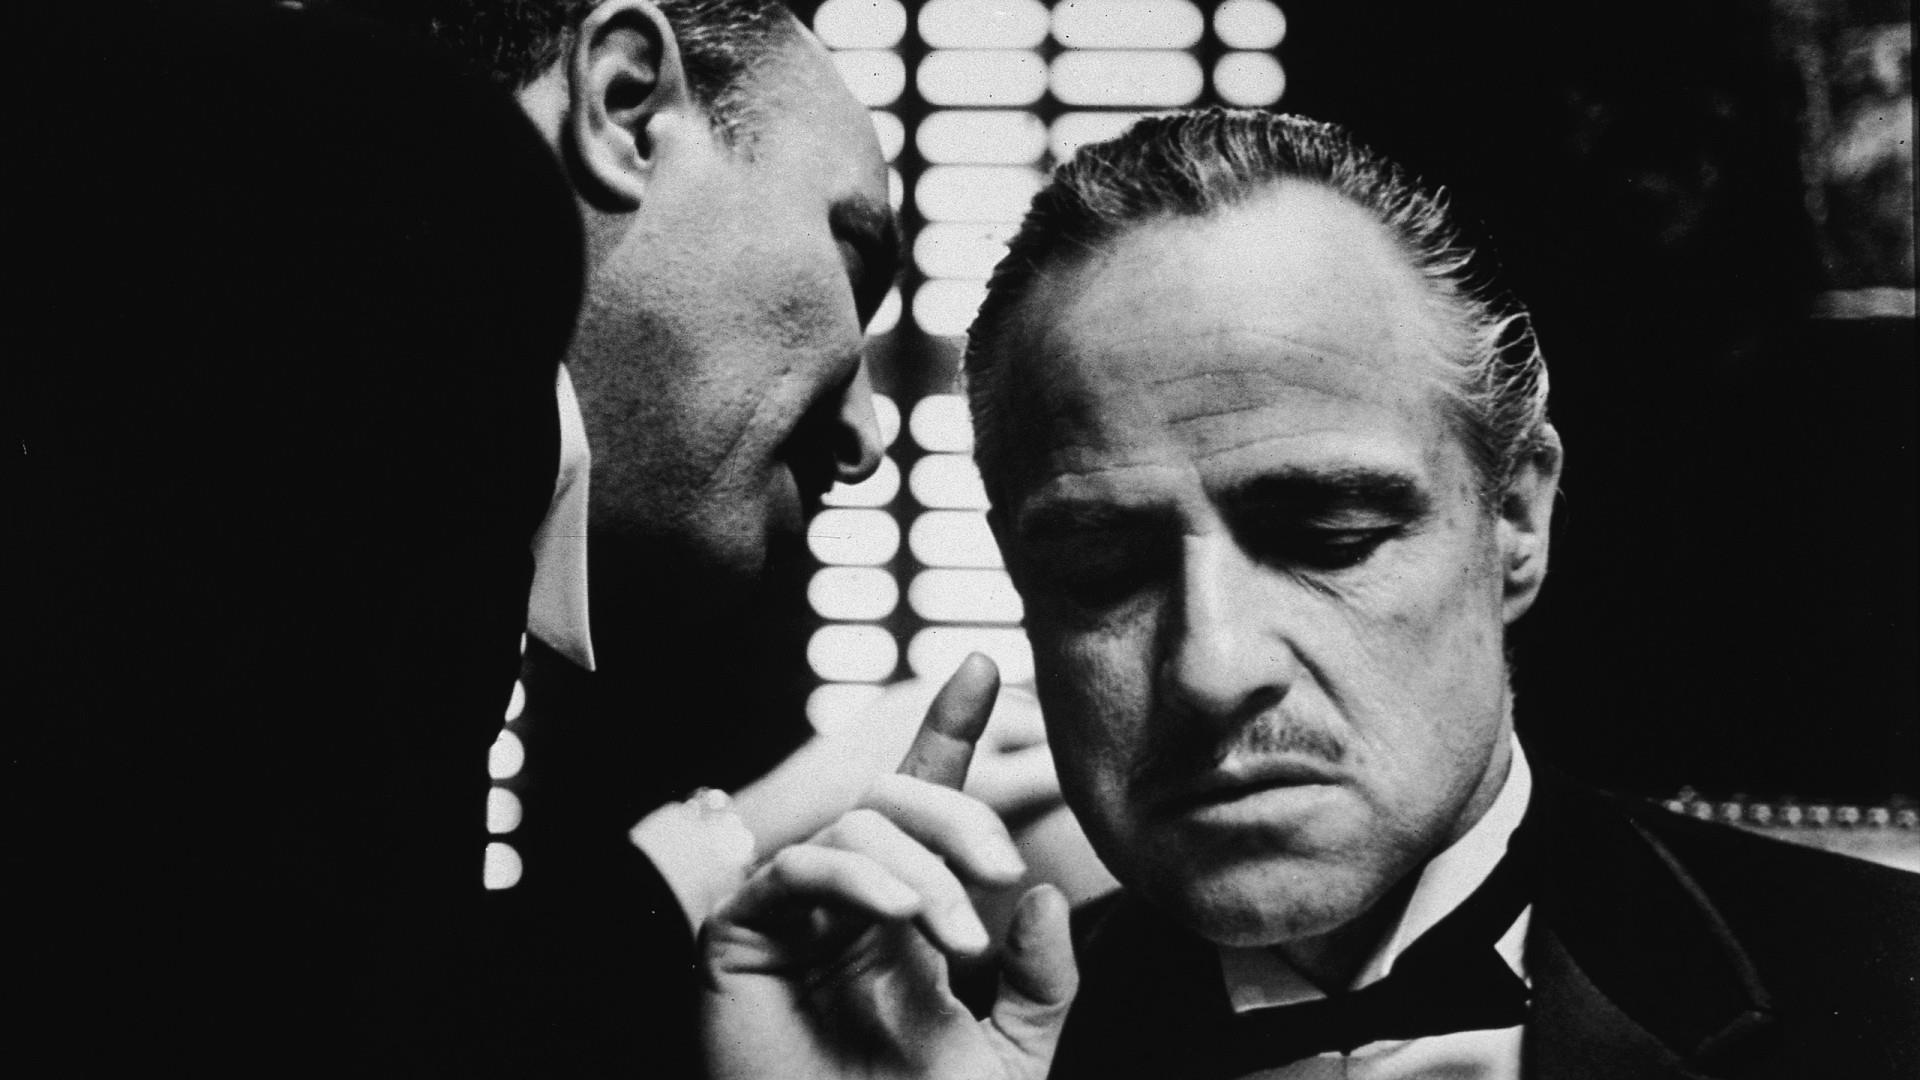 Ojciec chrzestny Don Vito Corleone film kino gangsterzy Marlon Brando